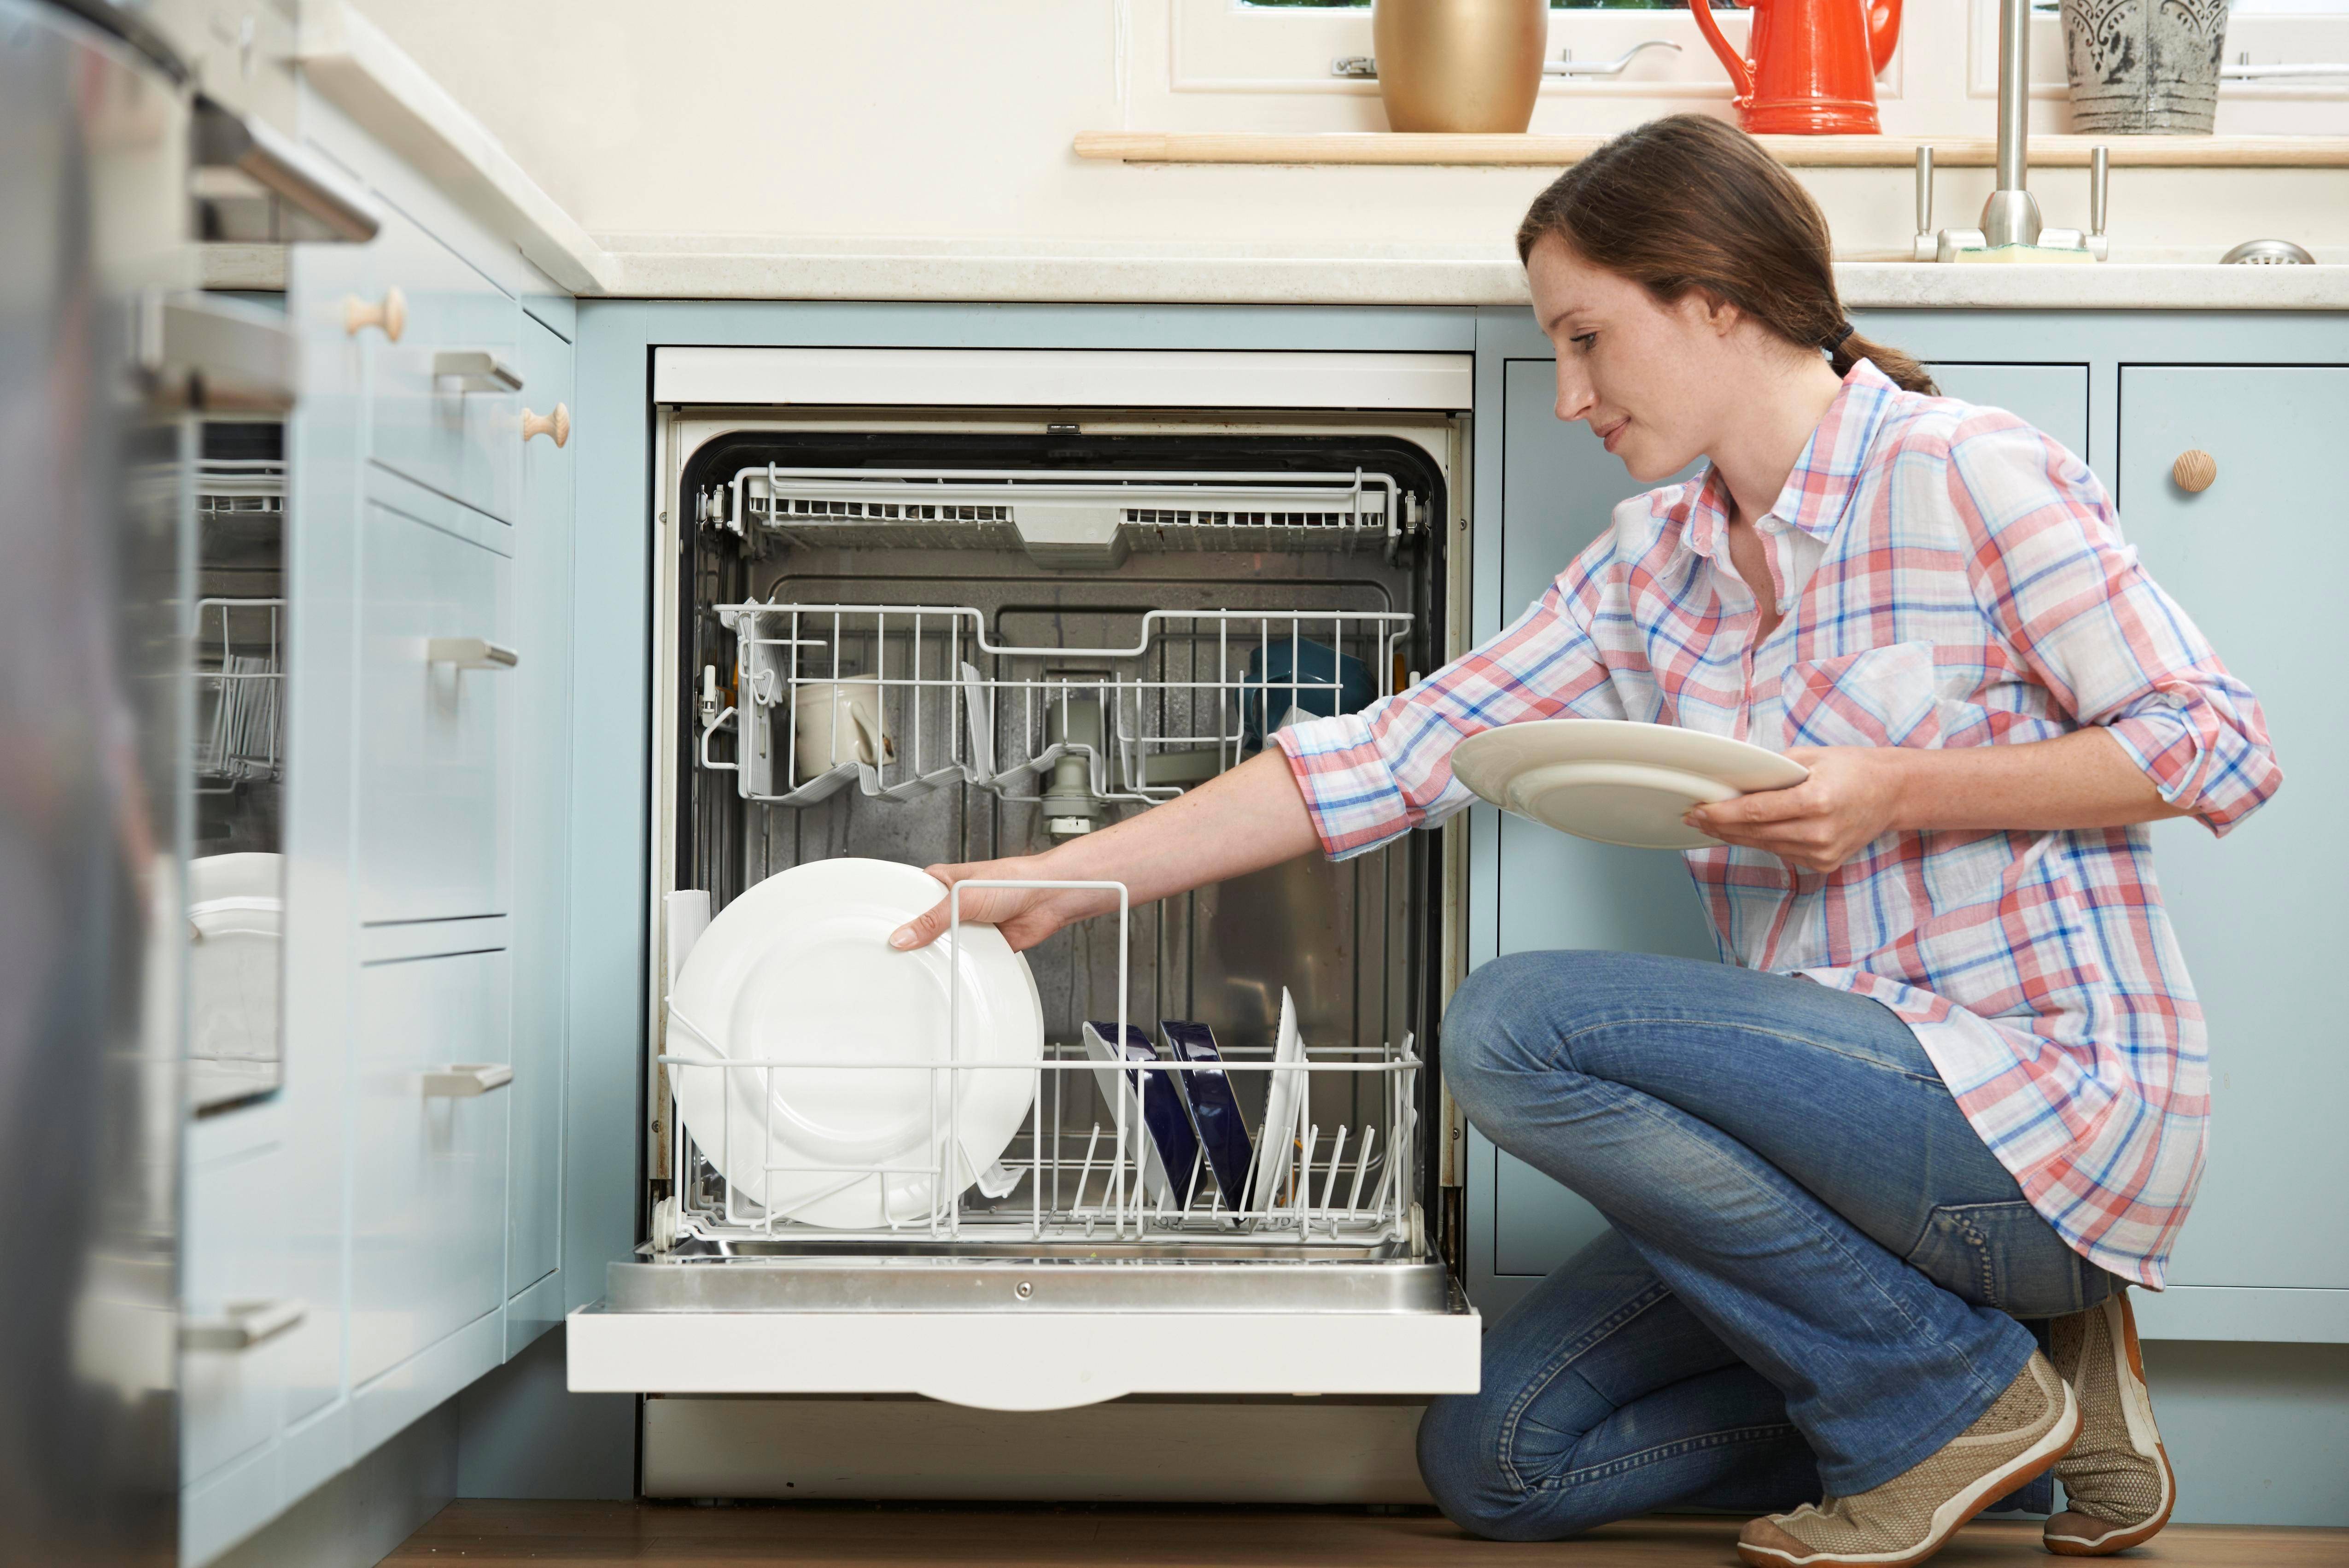 Как устранить неприятный запах в посудомоечной машине